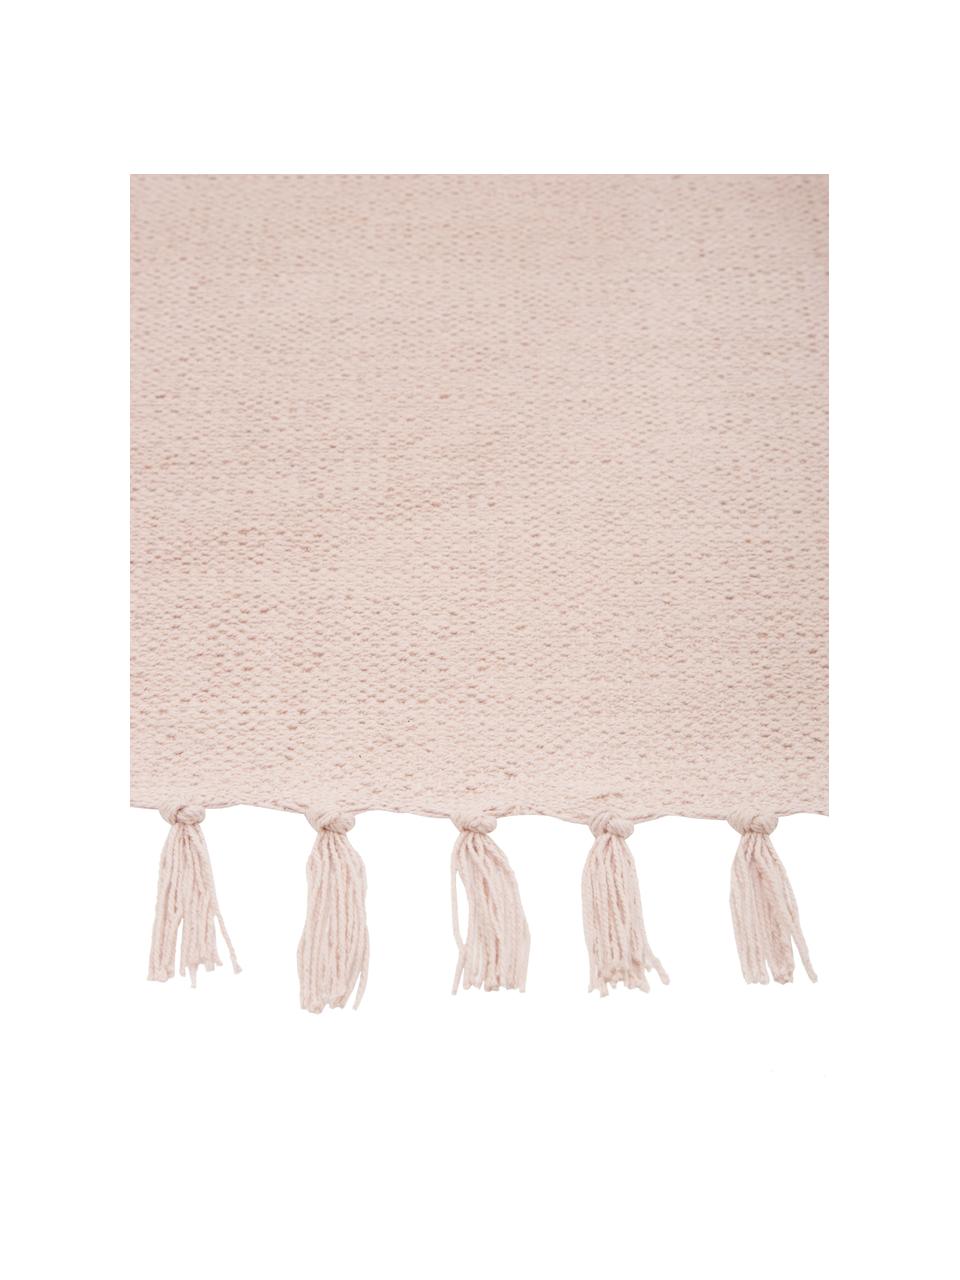 Tenký, ručně tkaný bavlněný koberec Agneta, Růžová